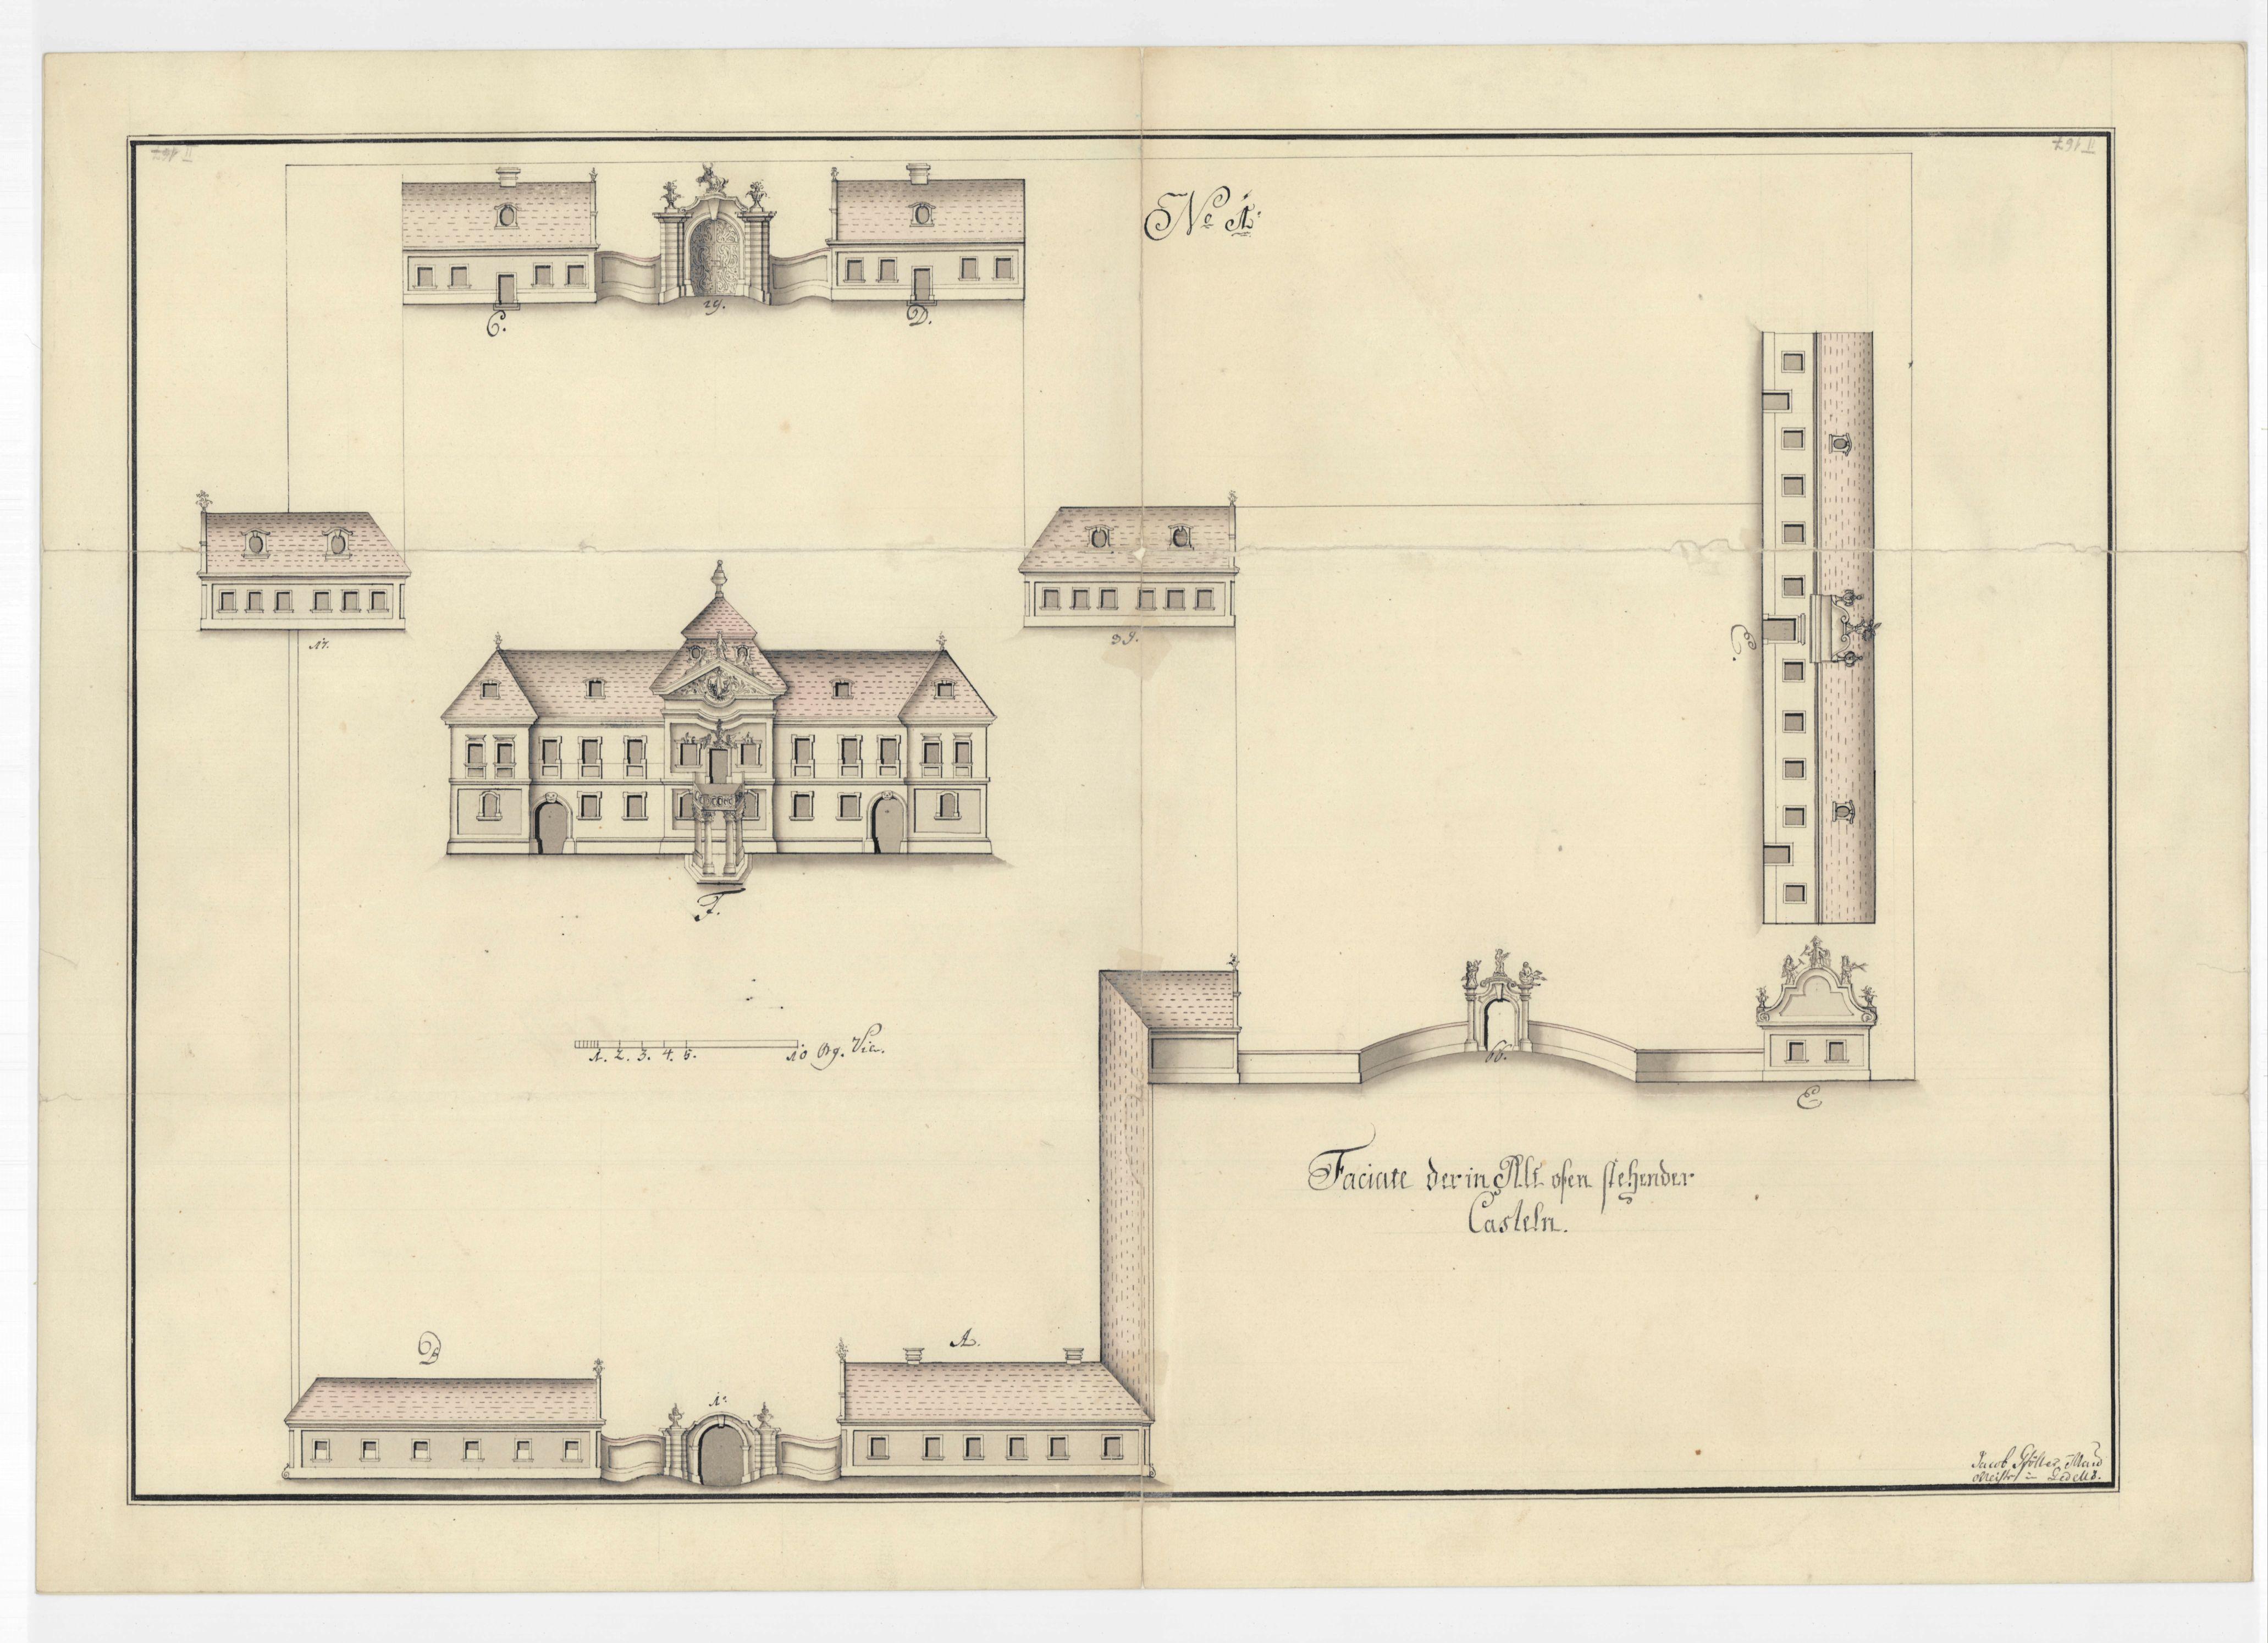 Gföller Jakab kamarai felmérése a Zichy-kastélyról, 1774. Magyar Nemzeti Levéltár, ltsz. HU-MNL-OL-T 1-167/1.